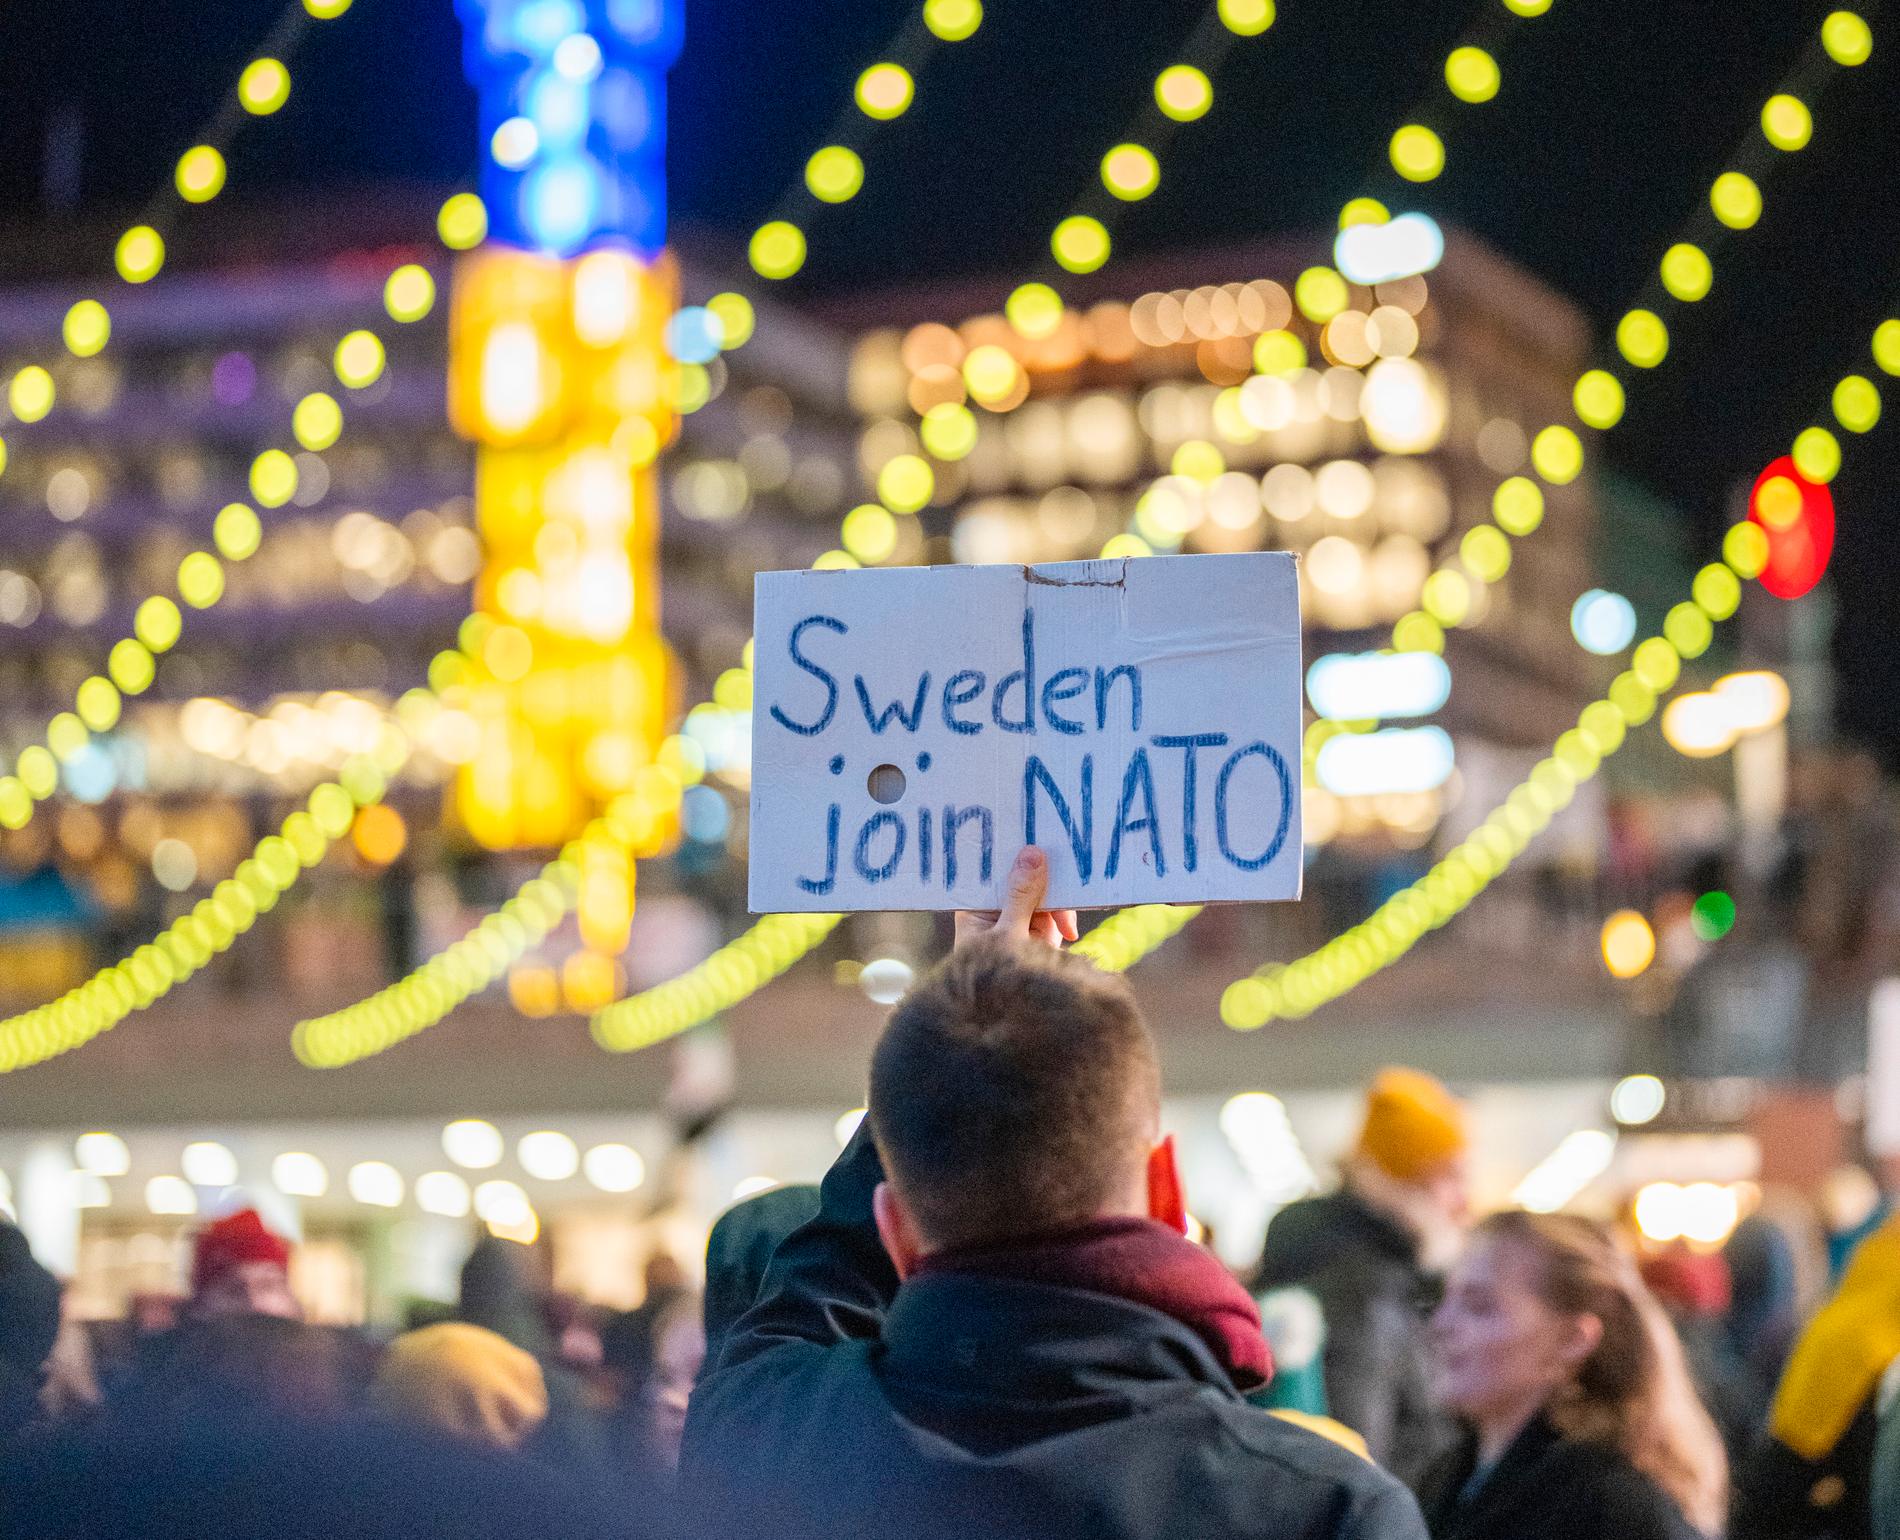 ”Nu när Ryssland gått in så svänger opinionen i Sverige till en mer positiv inställning”, säger Karin Nelsson på Aftonbladet/Demoskop